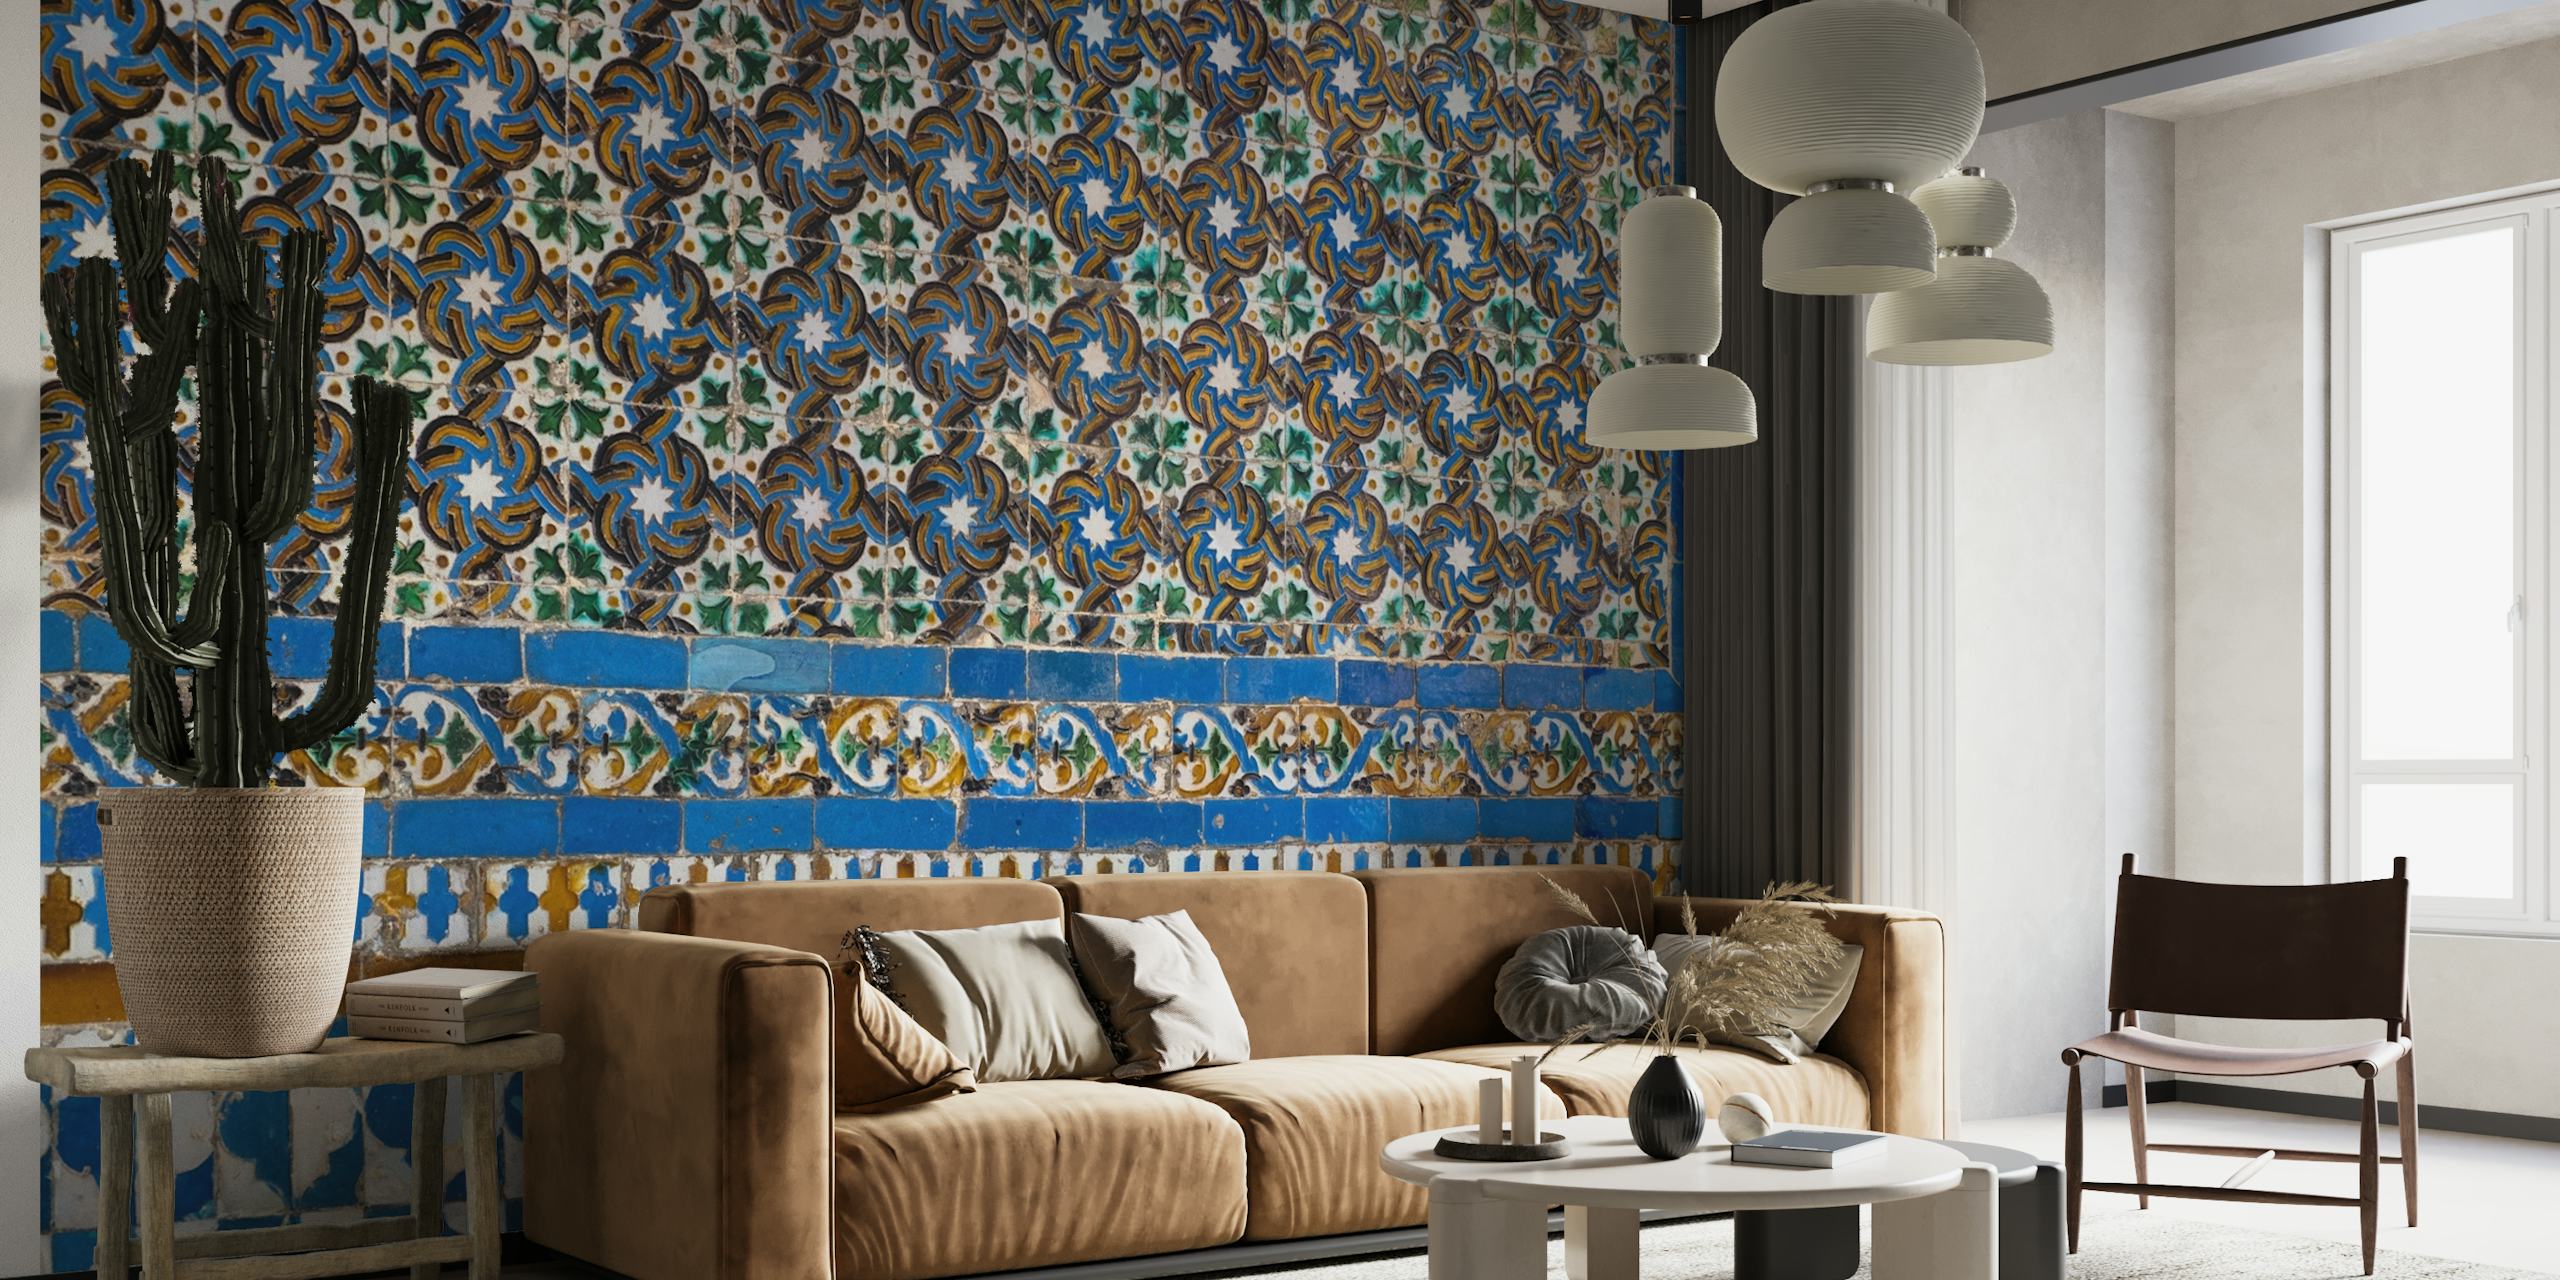 Zidna slika koja prikazuje tradicionalne španjolske uzorke pločica sa složenim dizajnom i toplom shemom boja.